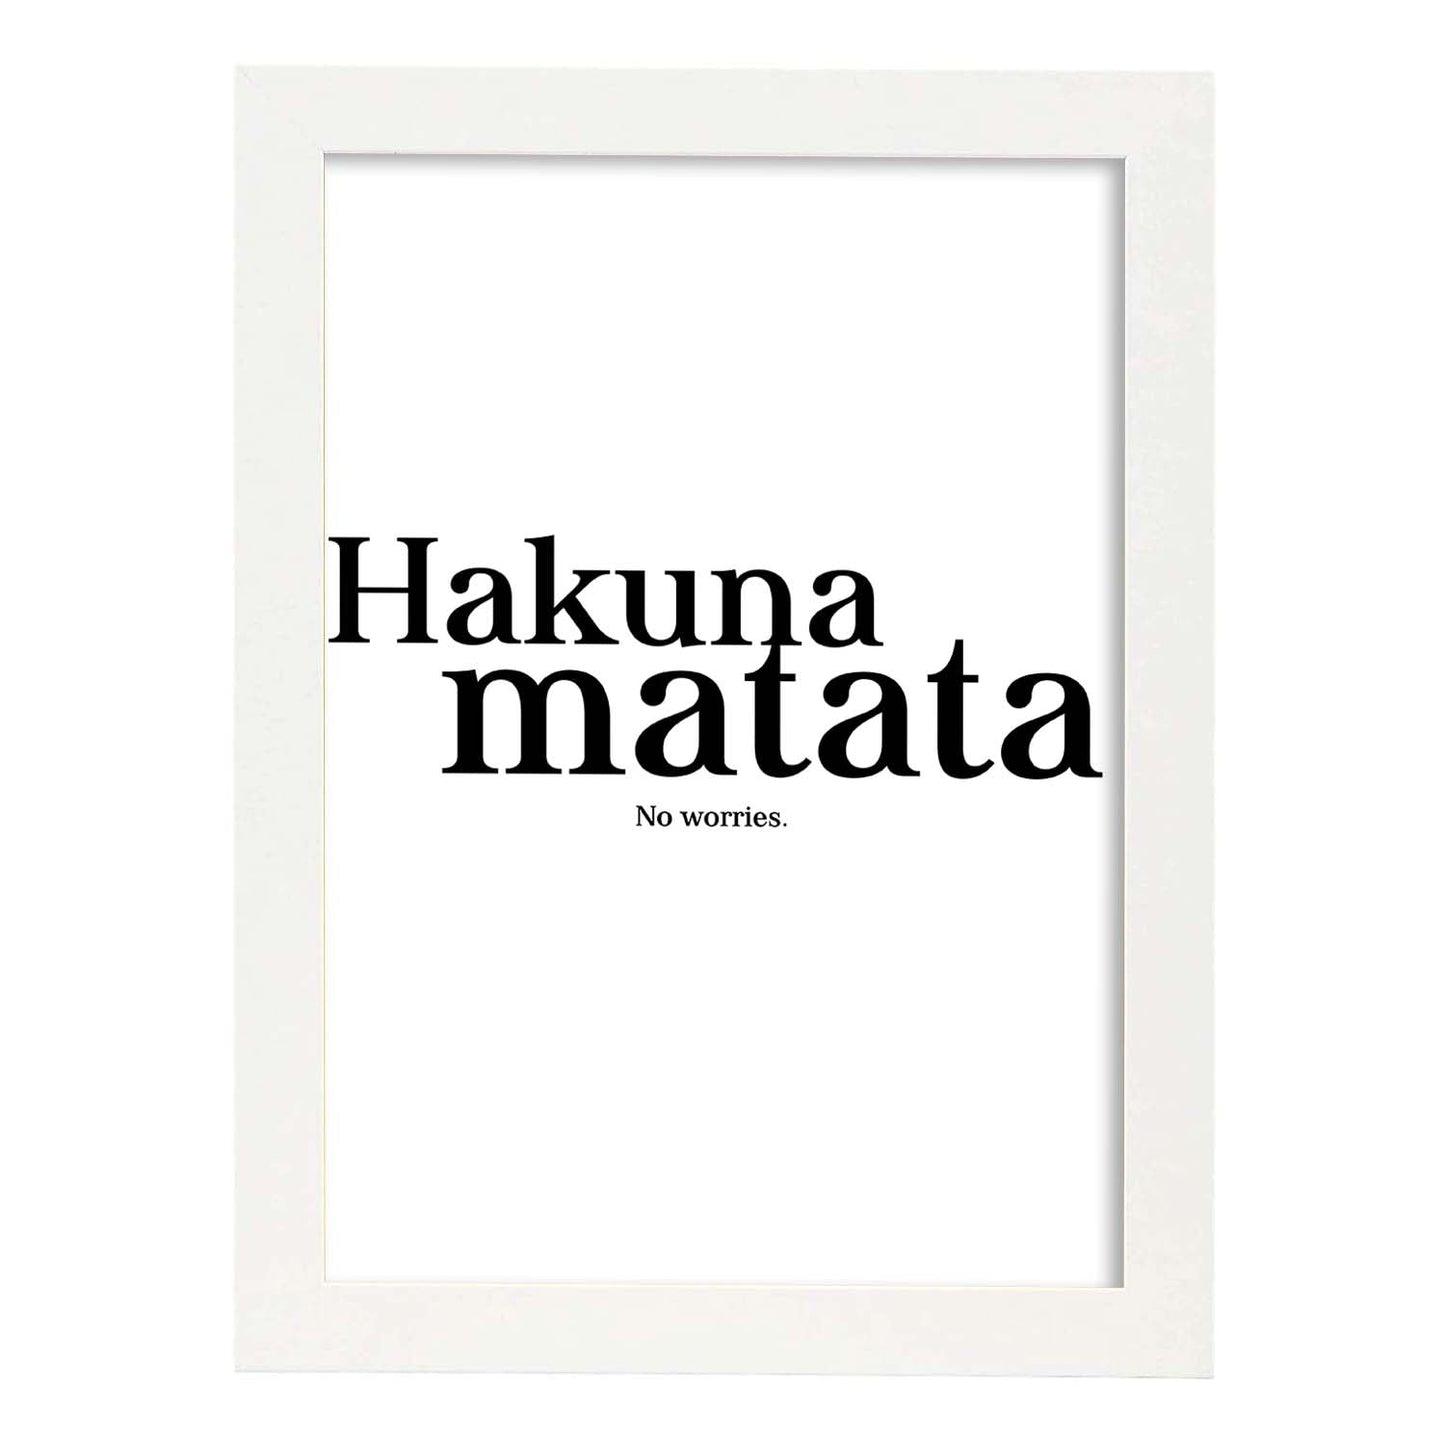 Lamina artistica decorativa con ilustración de hakuna matata estilo Mensaje inspiracional-Artwork-Nacnic-A4-Marco Blanco-Nacnic Estudio SL